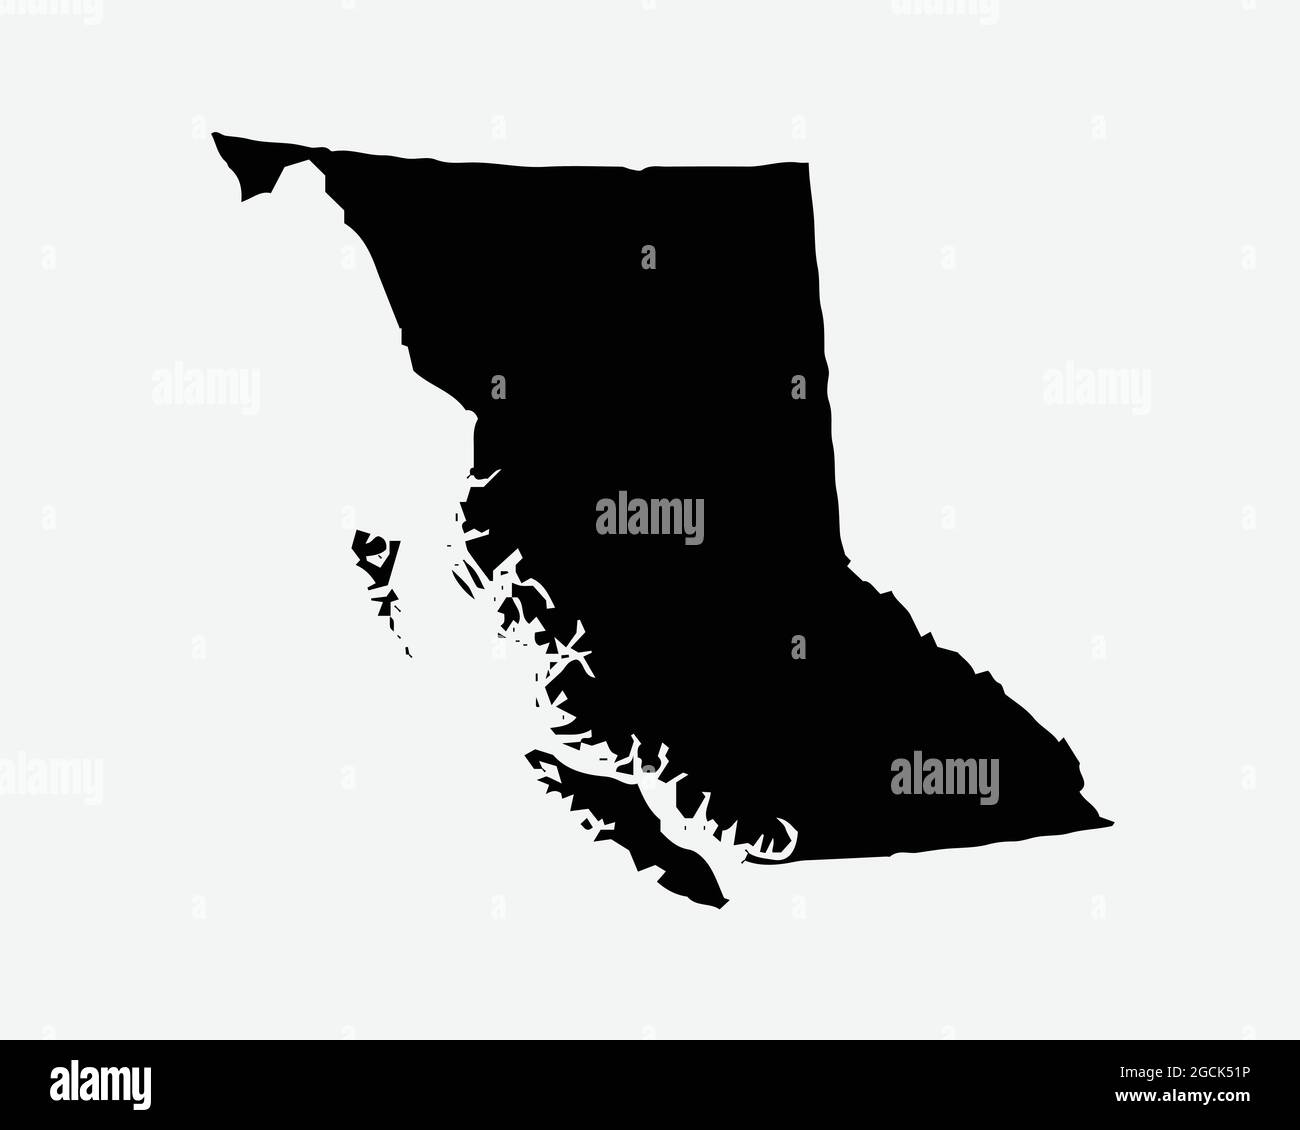 Colombie-Britannique Canada carte Silhouette noire. C.-B., province du Canada façonner la géographie limite frontalière de l'Atlas. Carte noire isolée sur un arrière-plan blanc. E Illustration de Vecteur